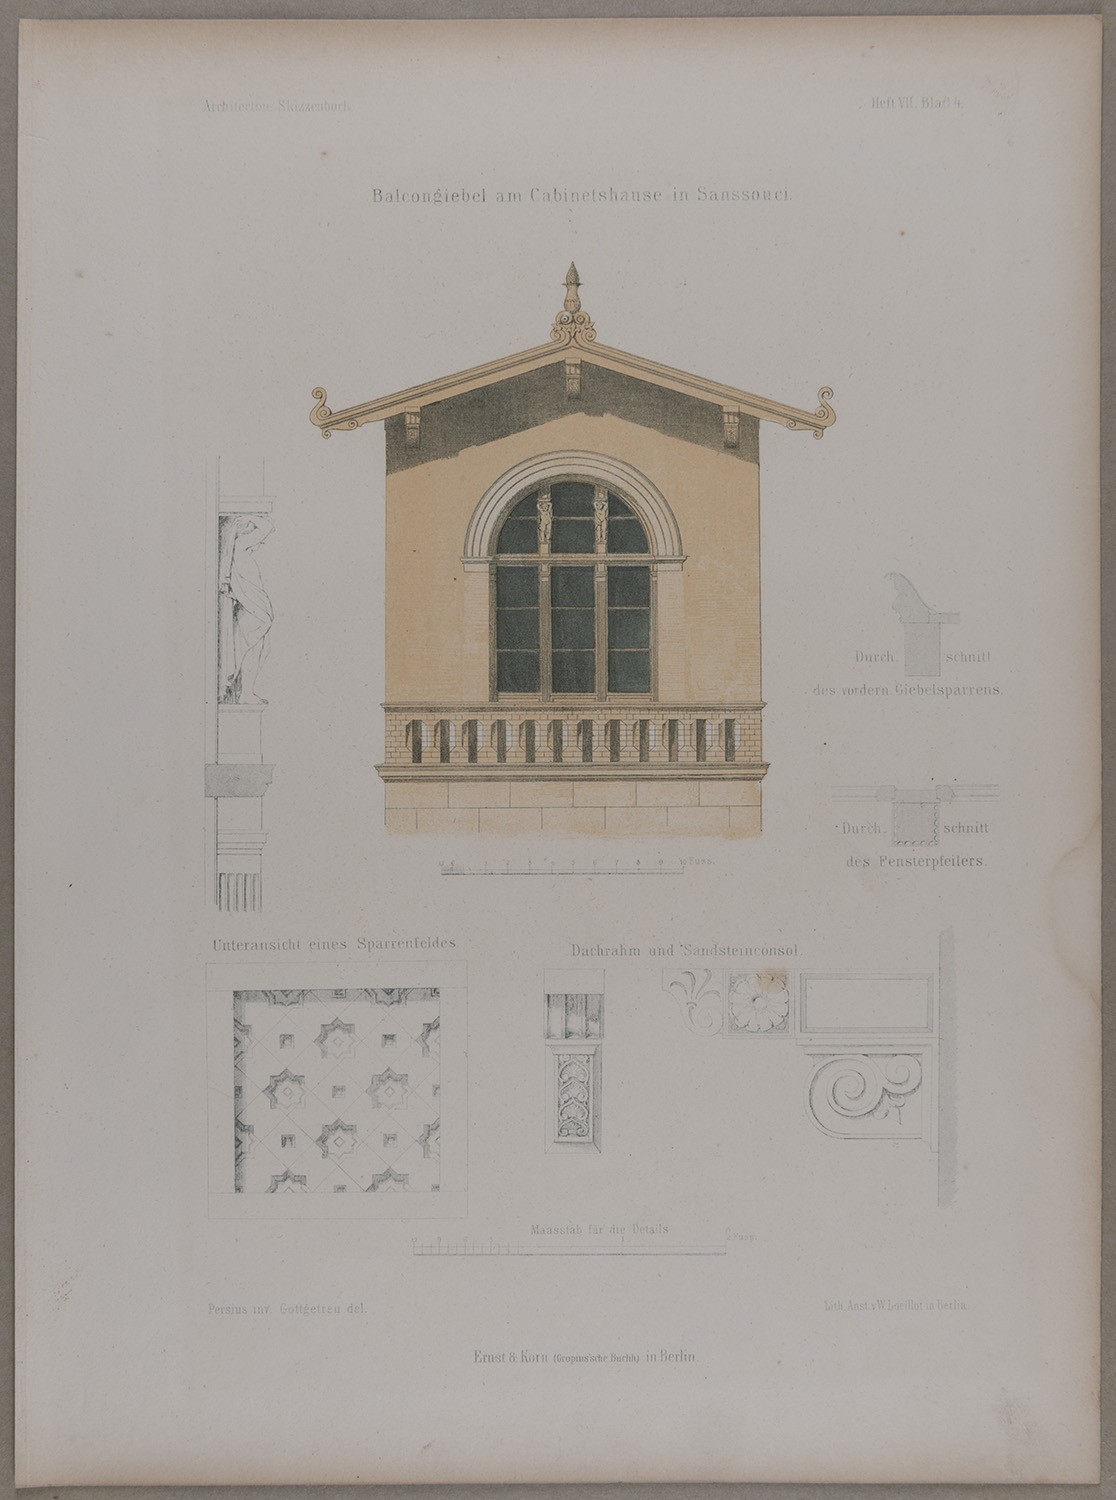 Potsdam-Sanssouci: Giebel der Villa Illaire (Architectonisches Skizzenbuch) (Landesgeschichtliche Vereinigung für die Mark Brandenburg e.V., Archiv CC BY)